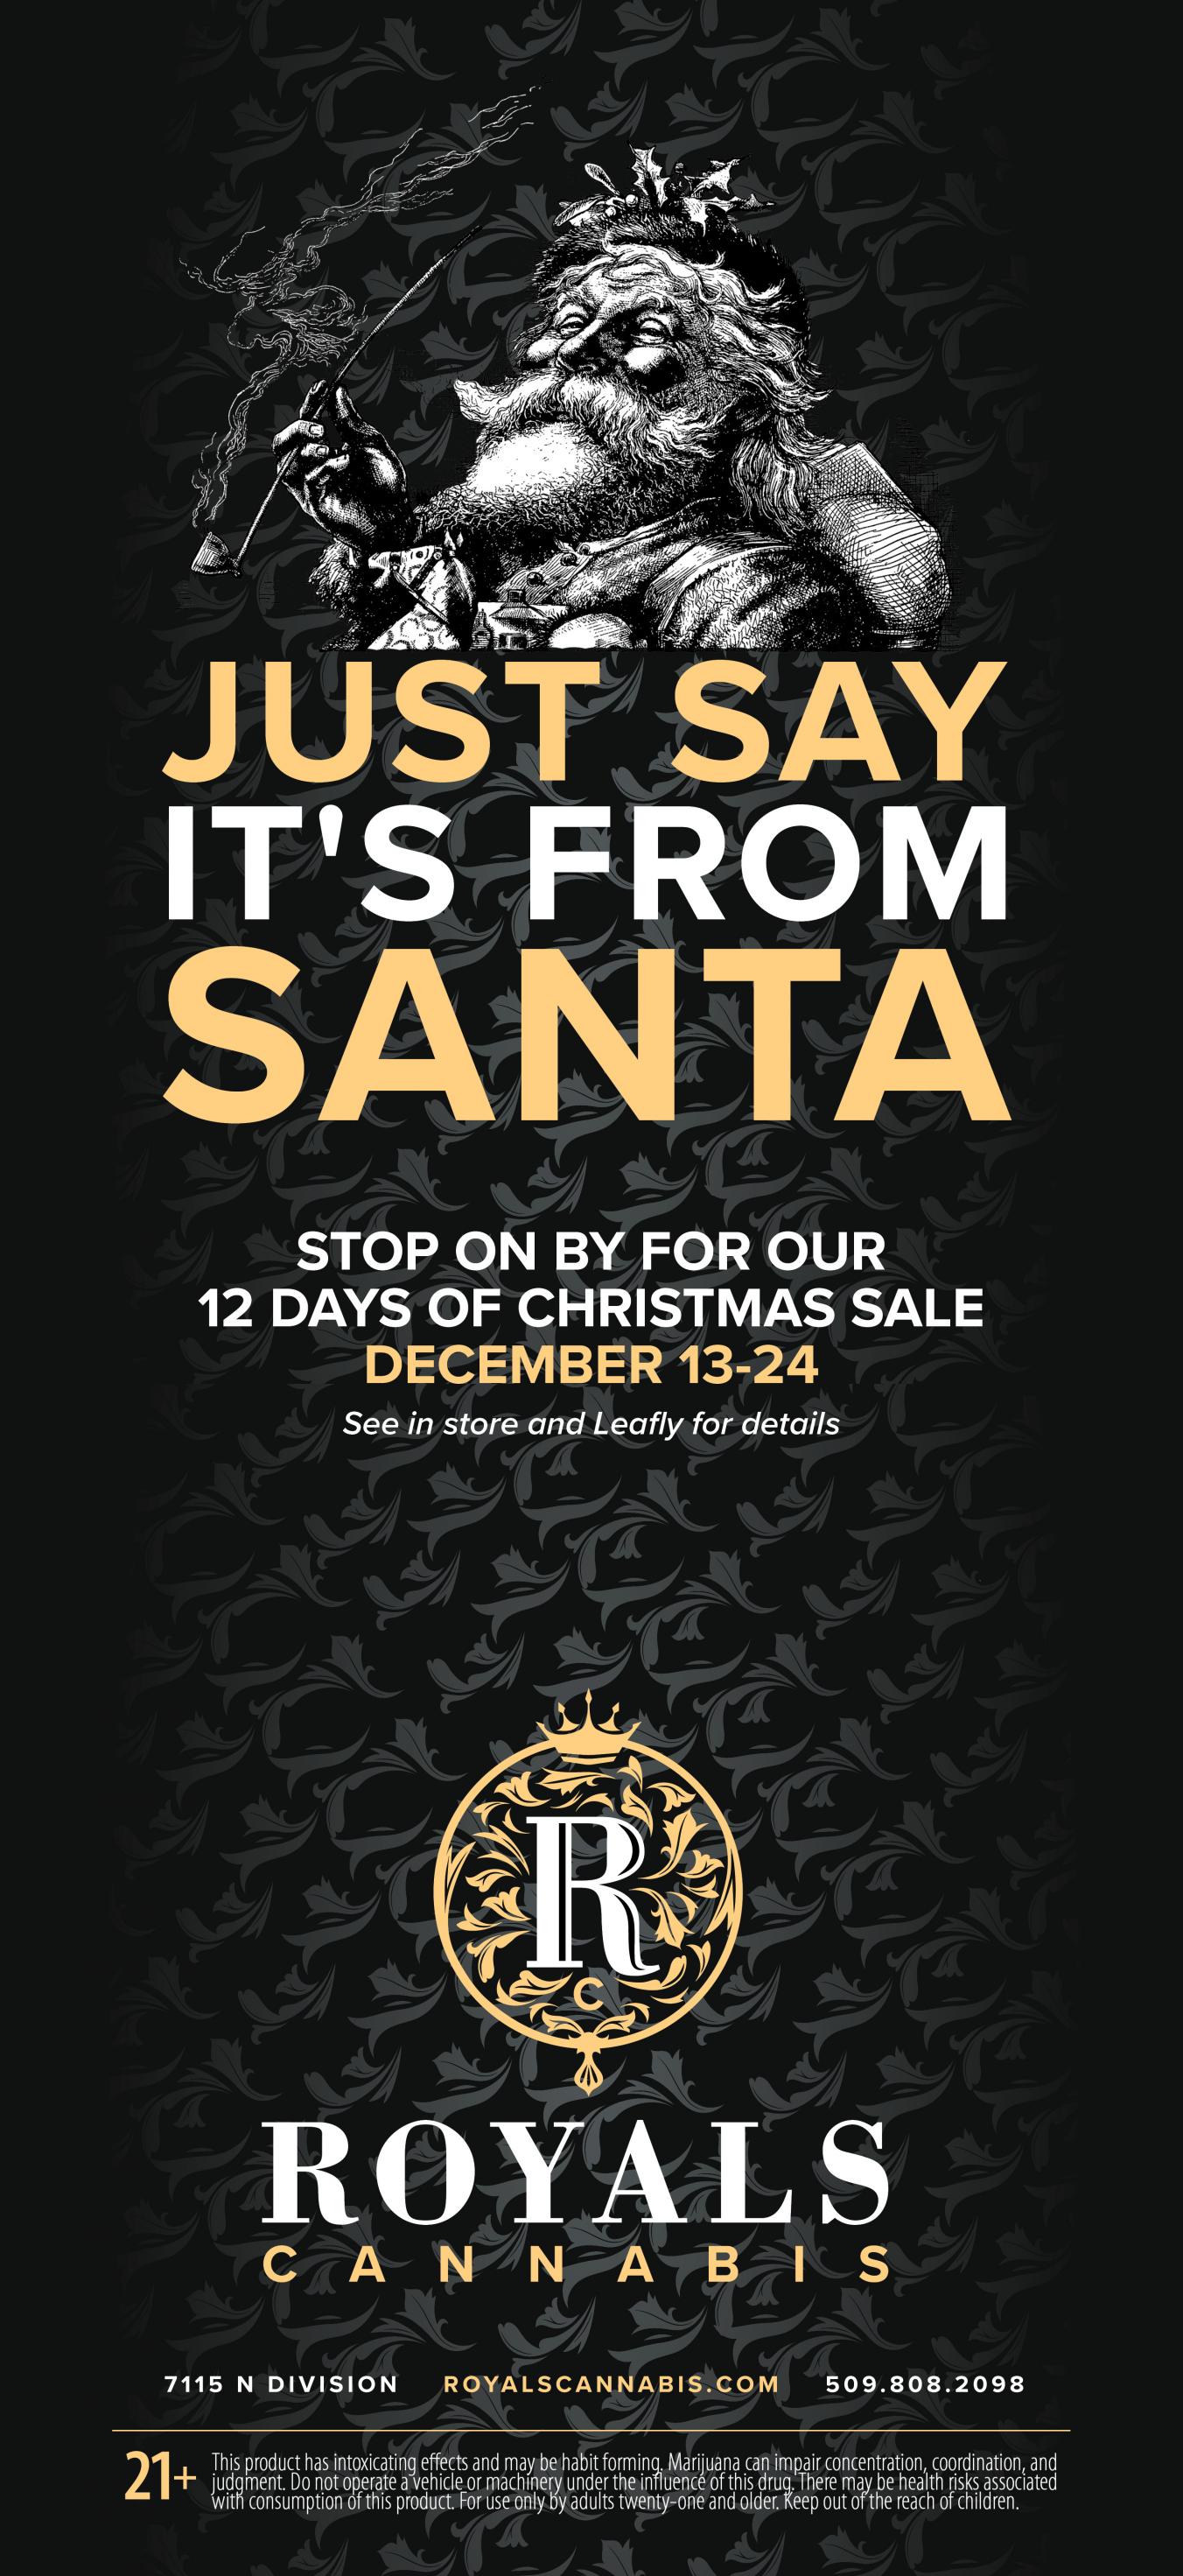 12 Days of Christmas Sale